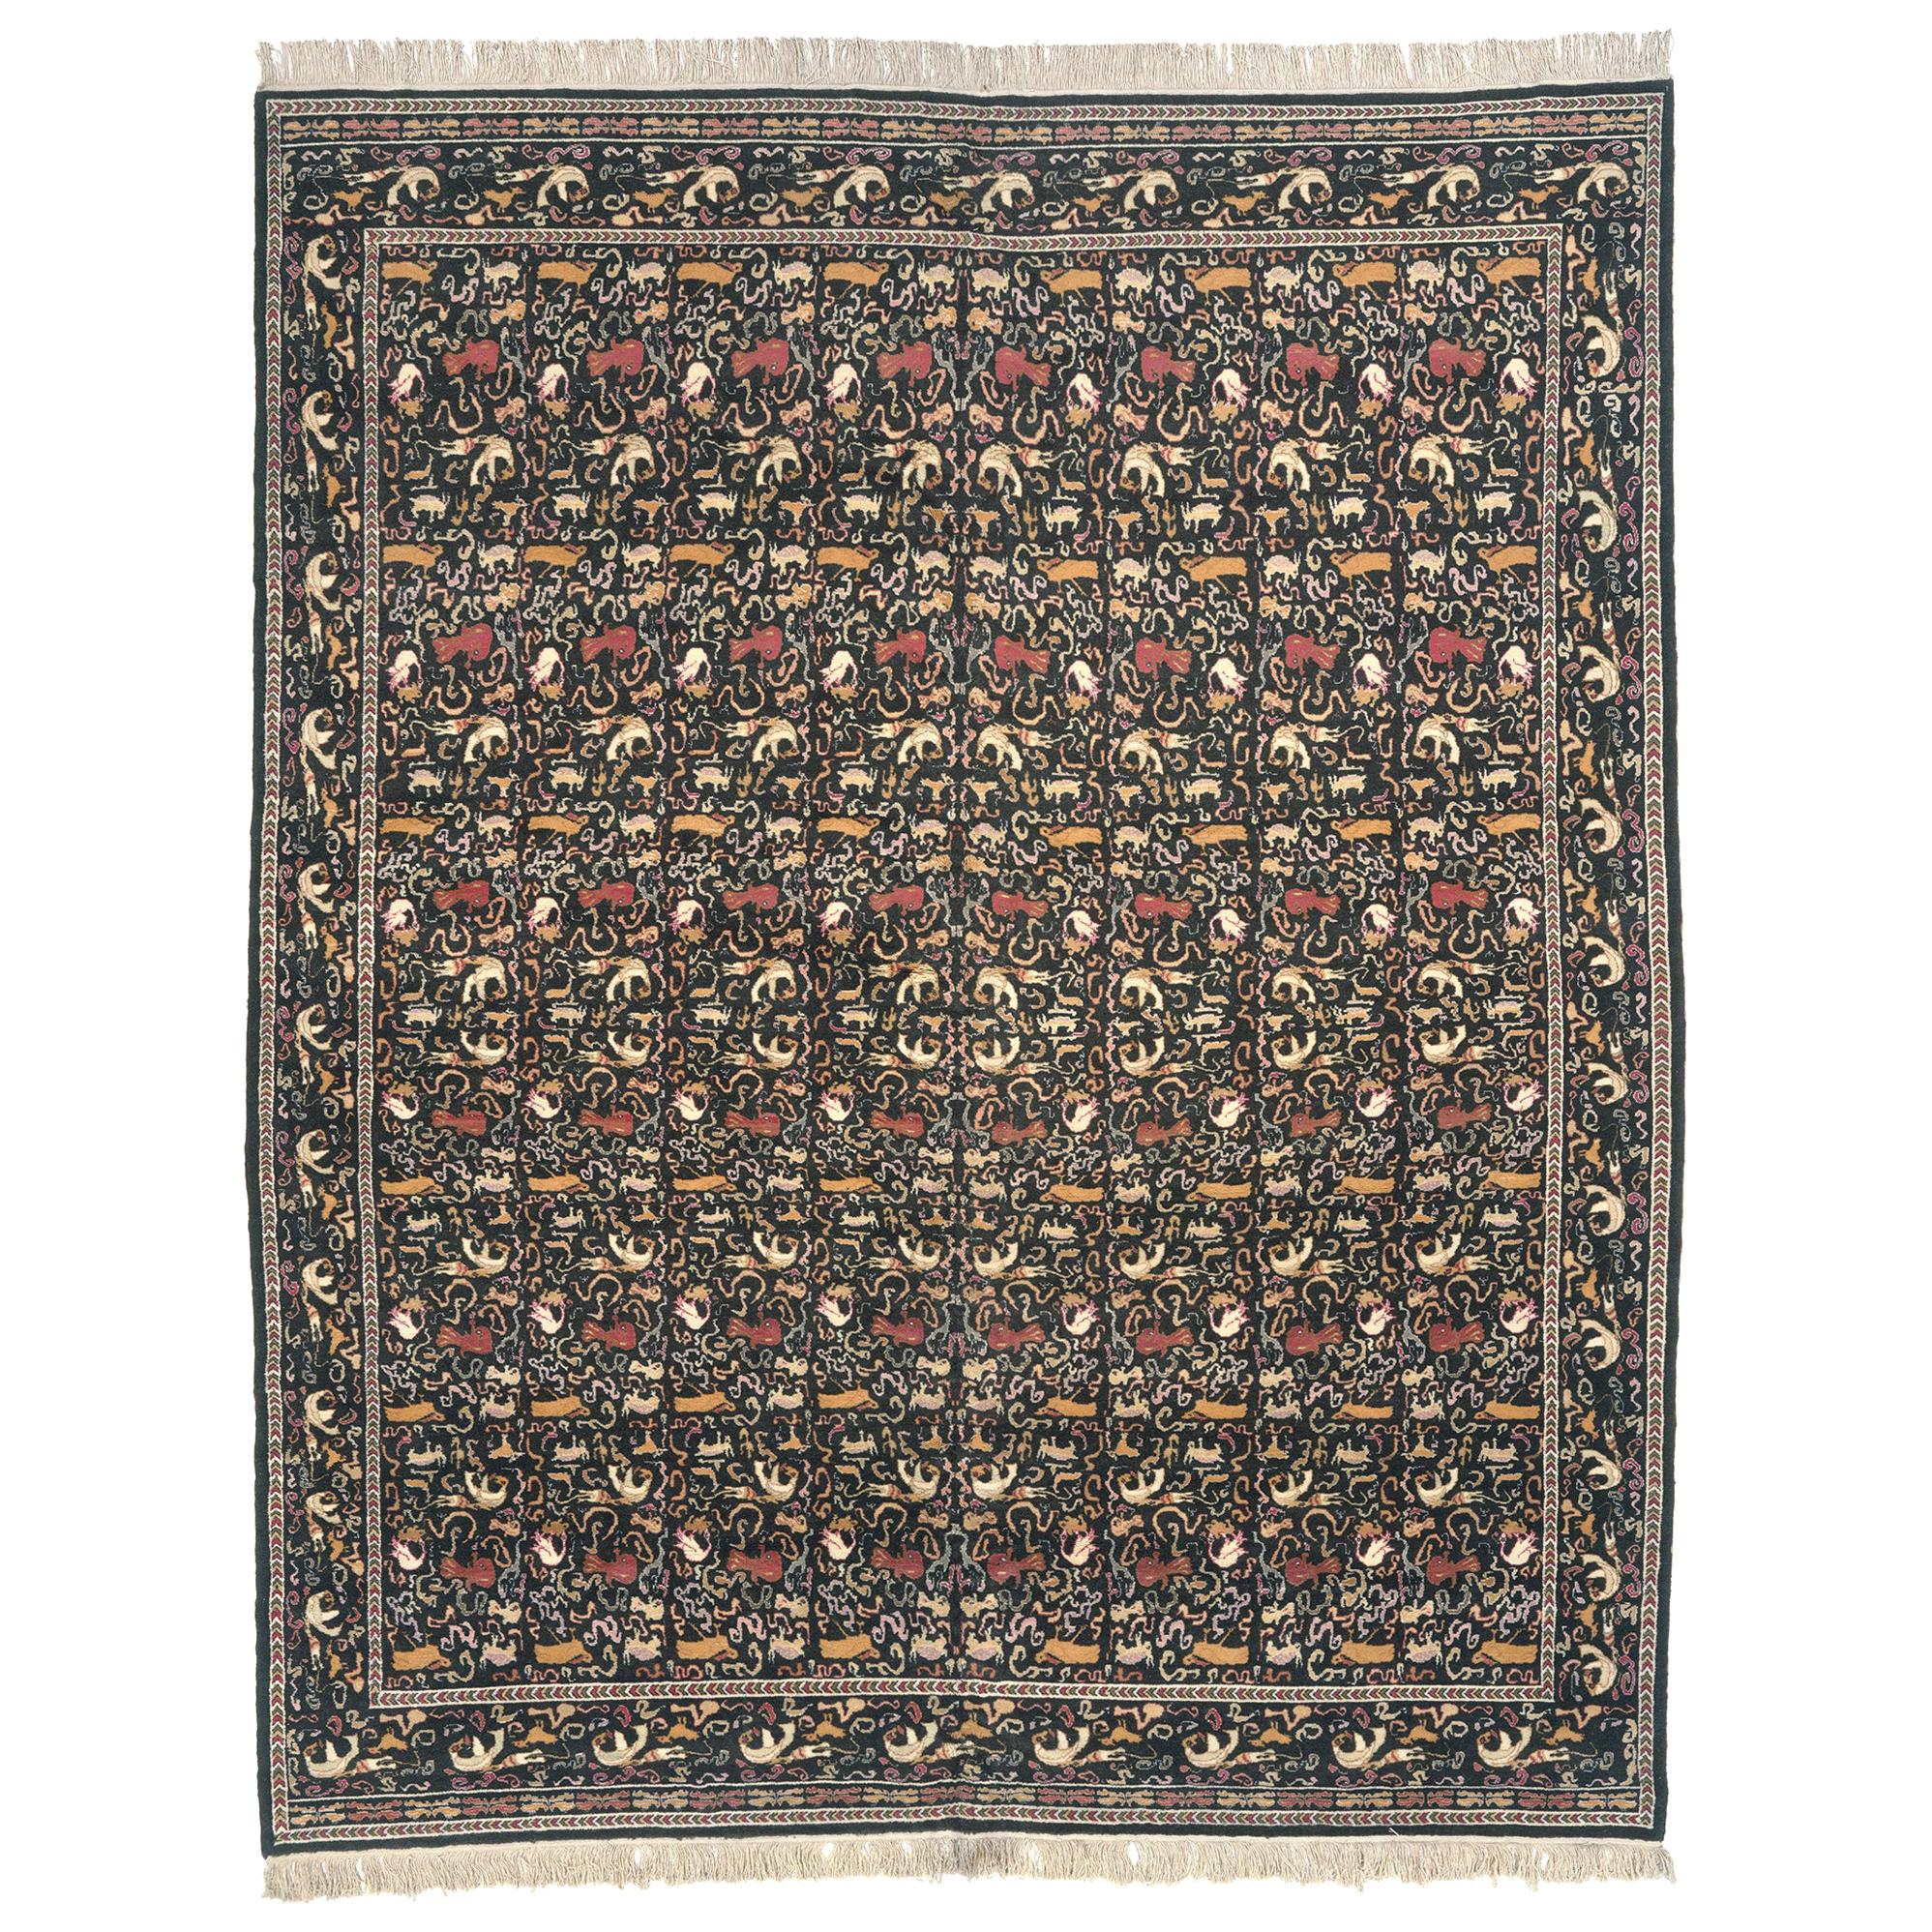 Griechischer Teppich im Vintage-Stil